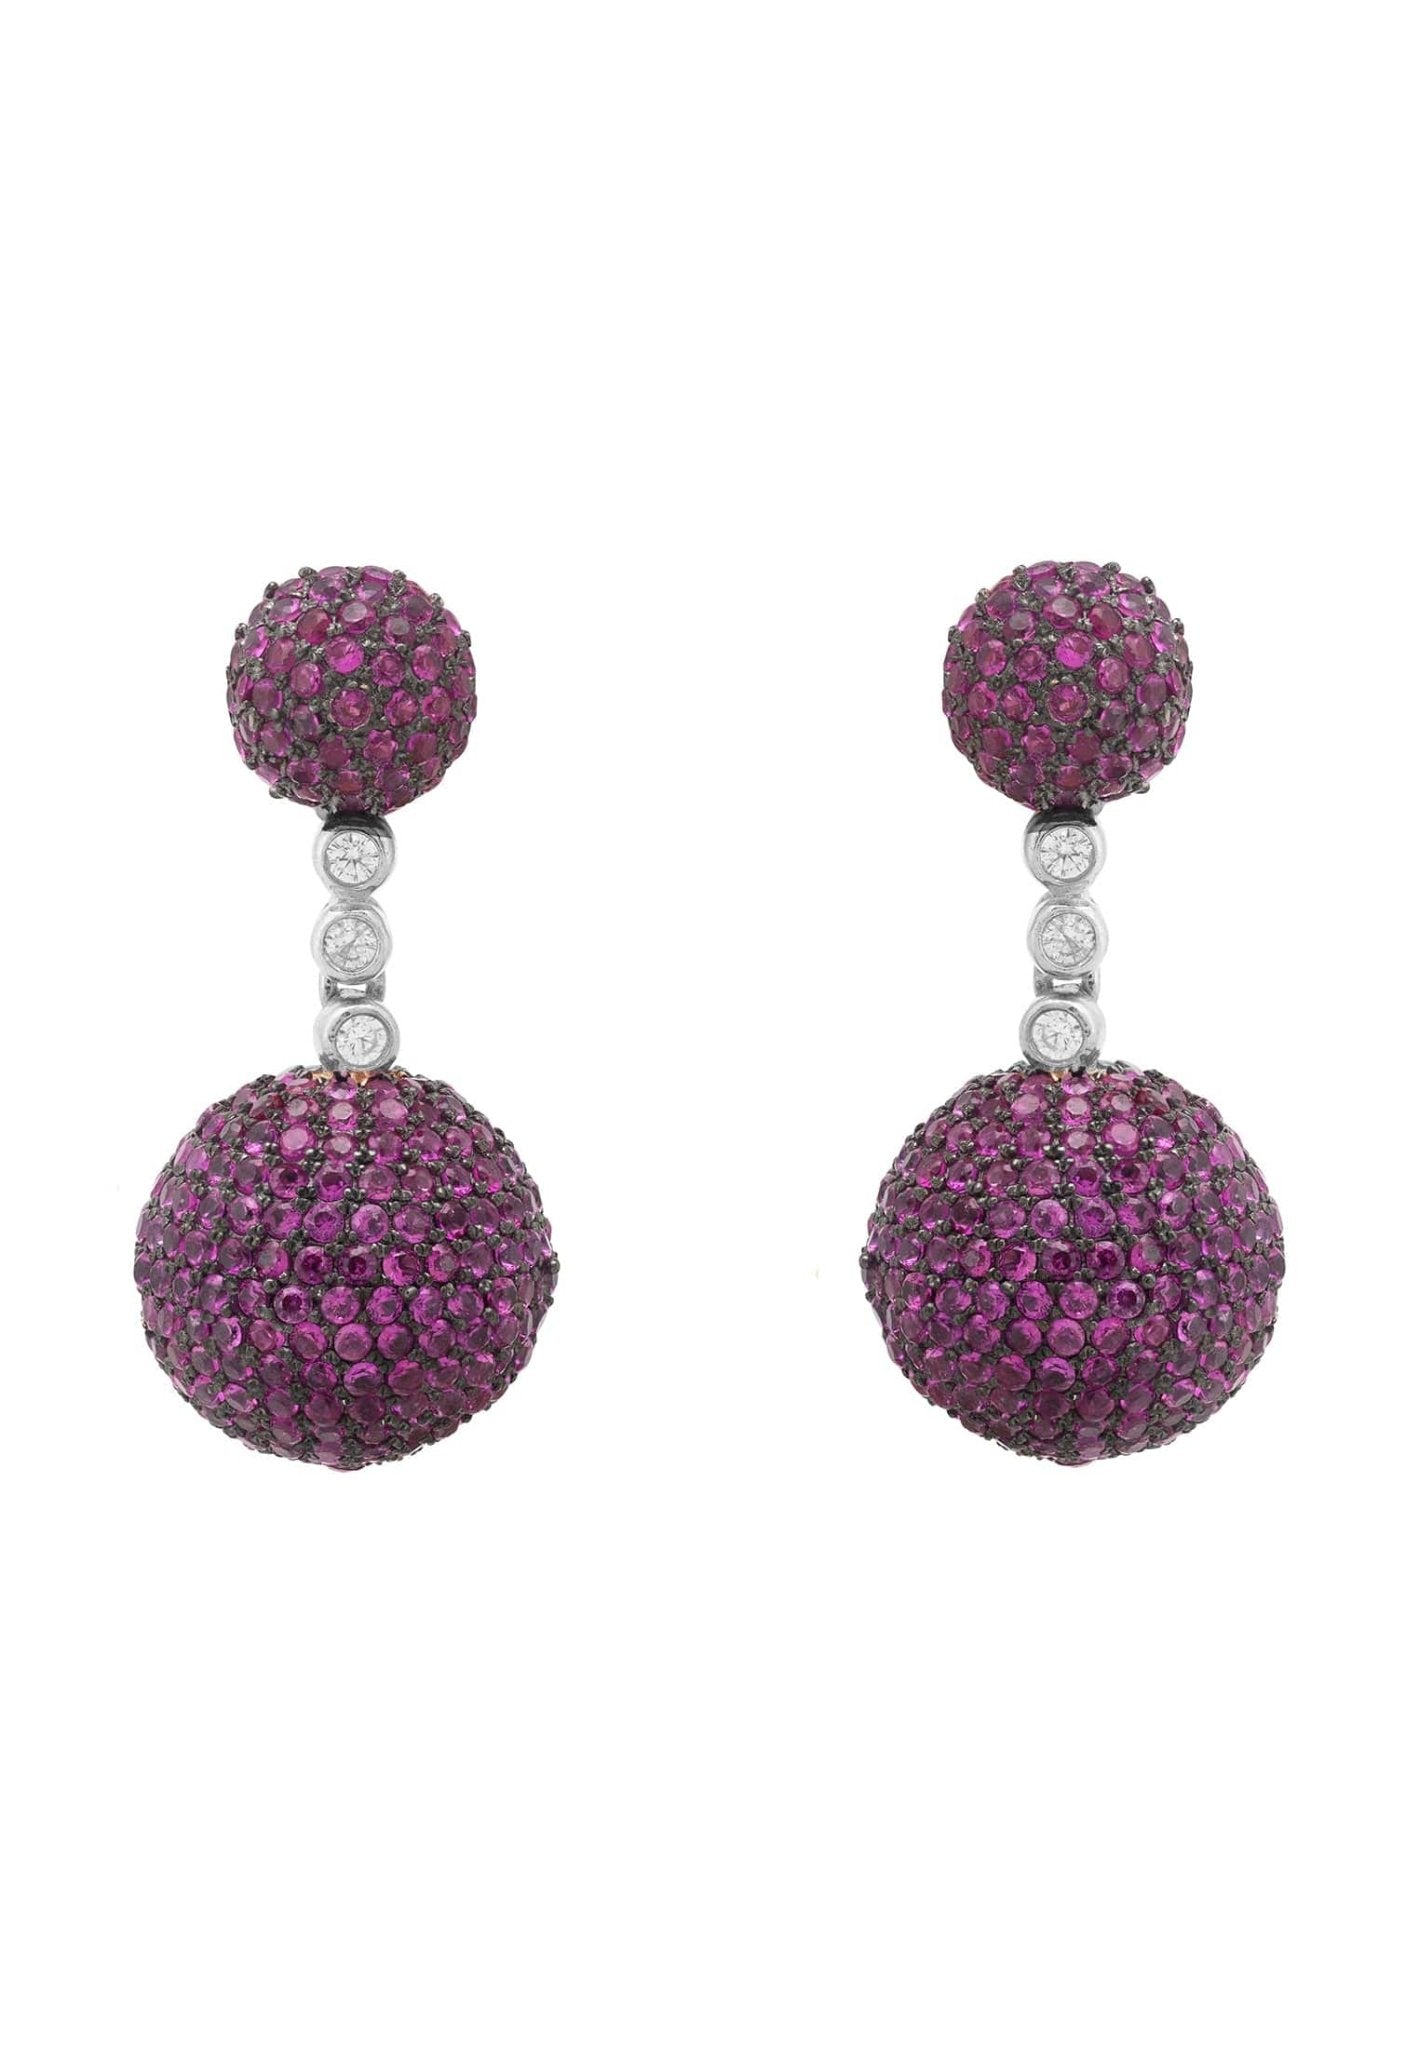 Monaco Sphere Drop Earrings Silver Ruby Pink Cz - LATELITA Earrings